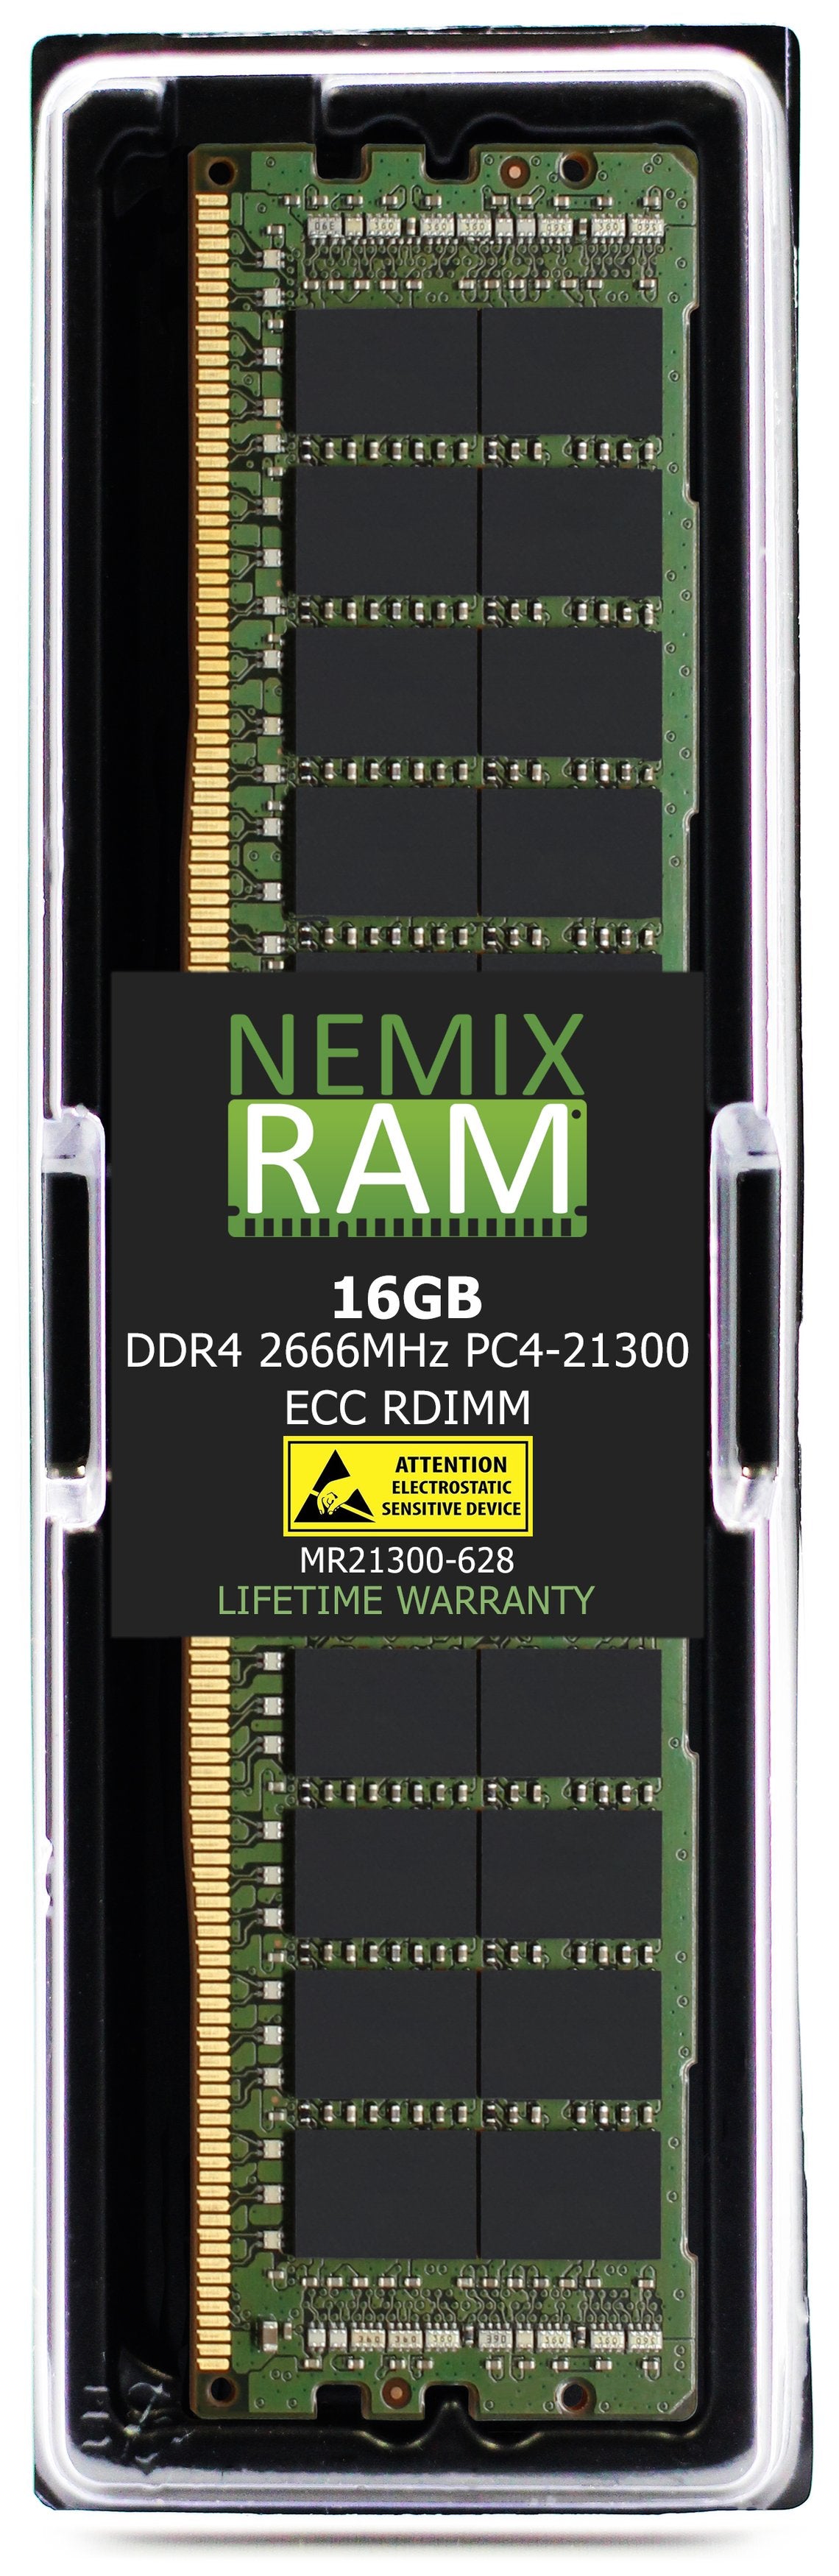 16GB DDR4 2666MHZ PC4-21300 RDIMM Compatible with Supermicro MEM-DR416L-CL03-ER26